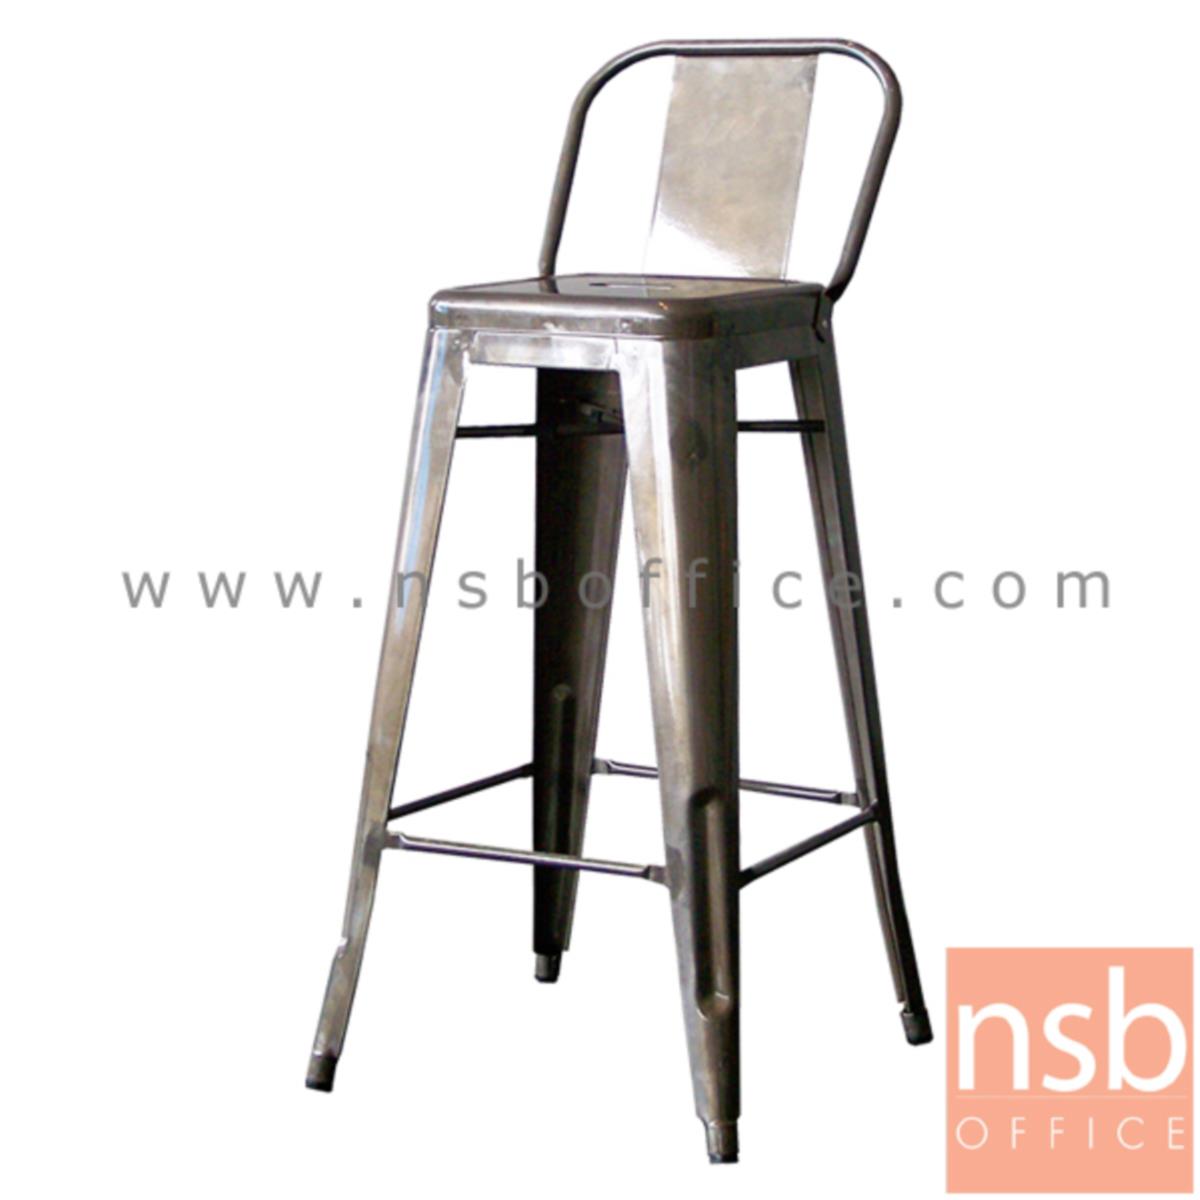 B09A150:เก้าอี้บาร์สูงเหล็กสไตล์เก่า รุ่น Javon (จาวอน) ขนาด 45W cm. โครงเหล็ก 